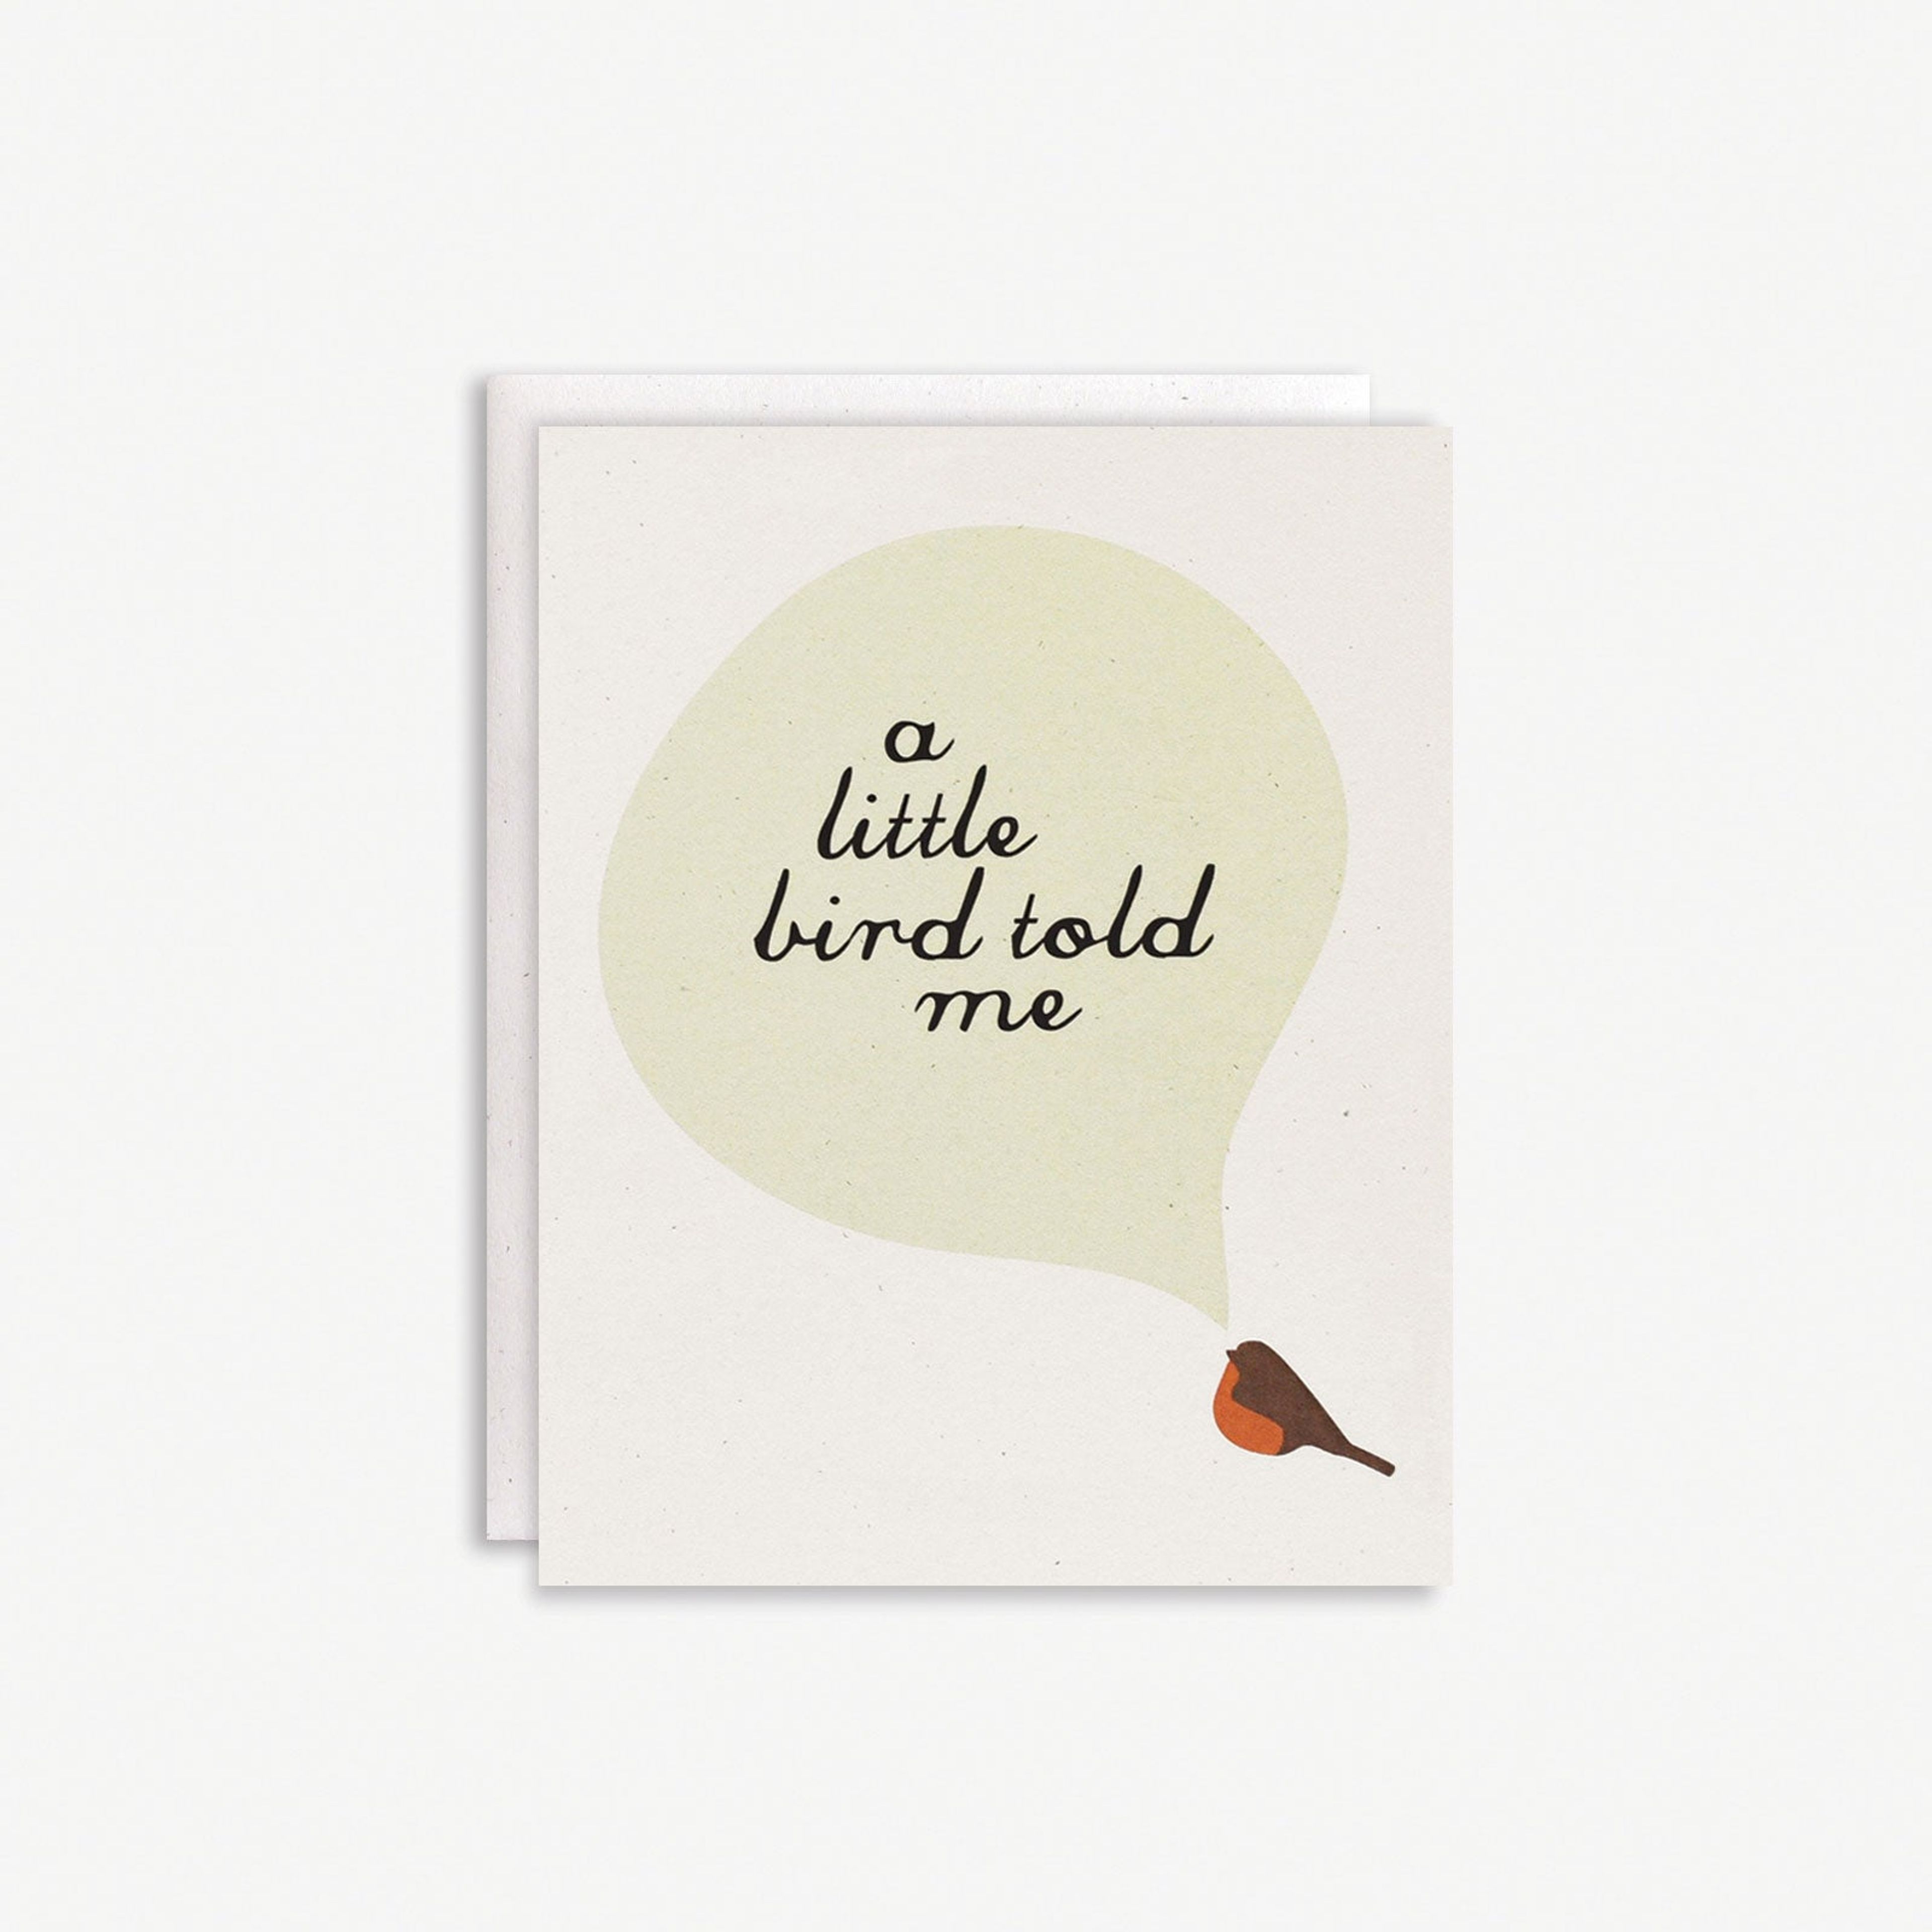 A Little Bird Told Me Card : Robin